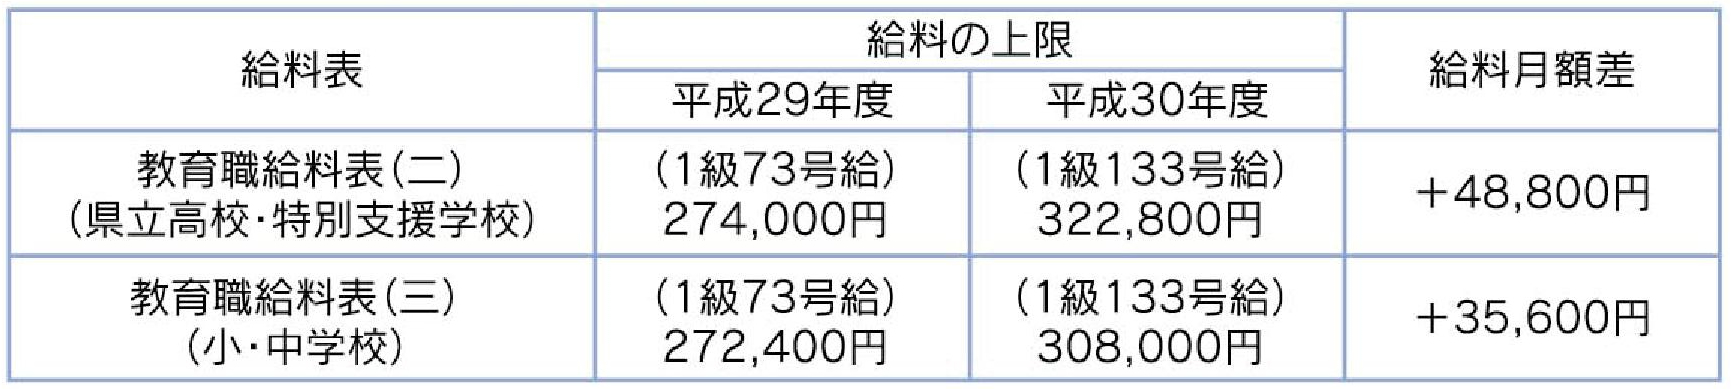 福岡県常勤講師給料引き上げ額一覧表